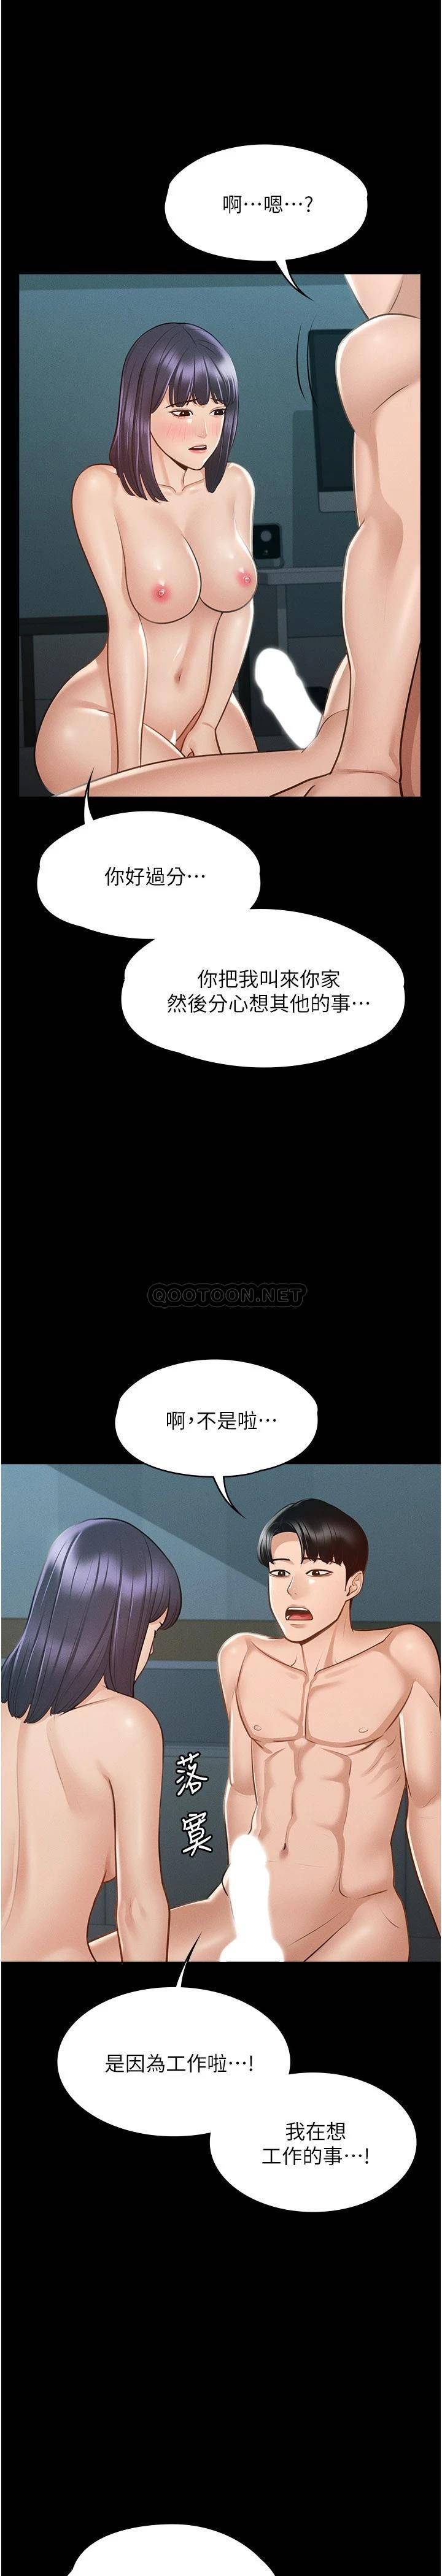 韩国污漫画 超級公務員 第8话 眼前的「性」福最重要! 22